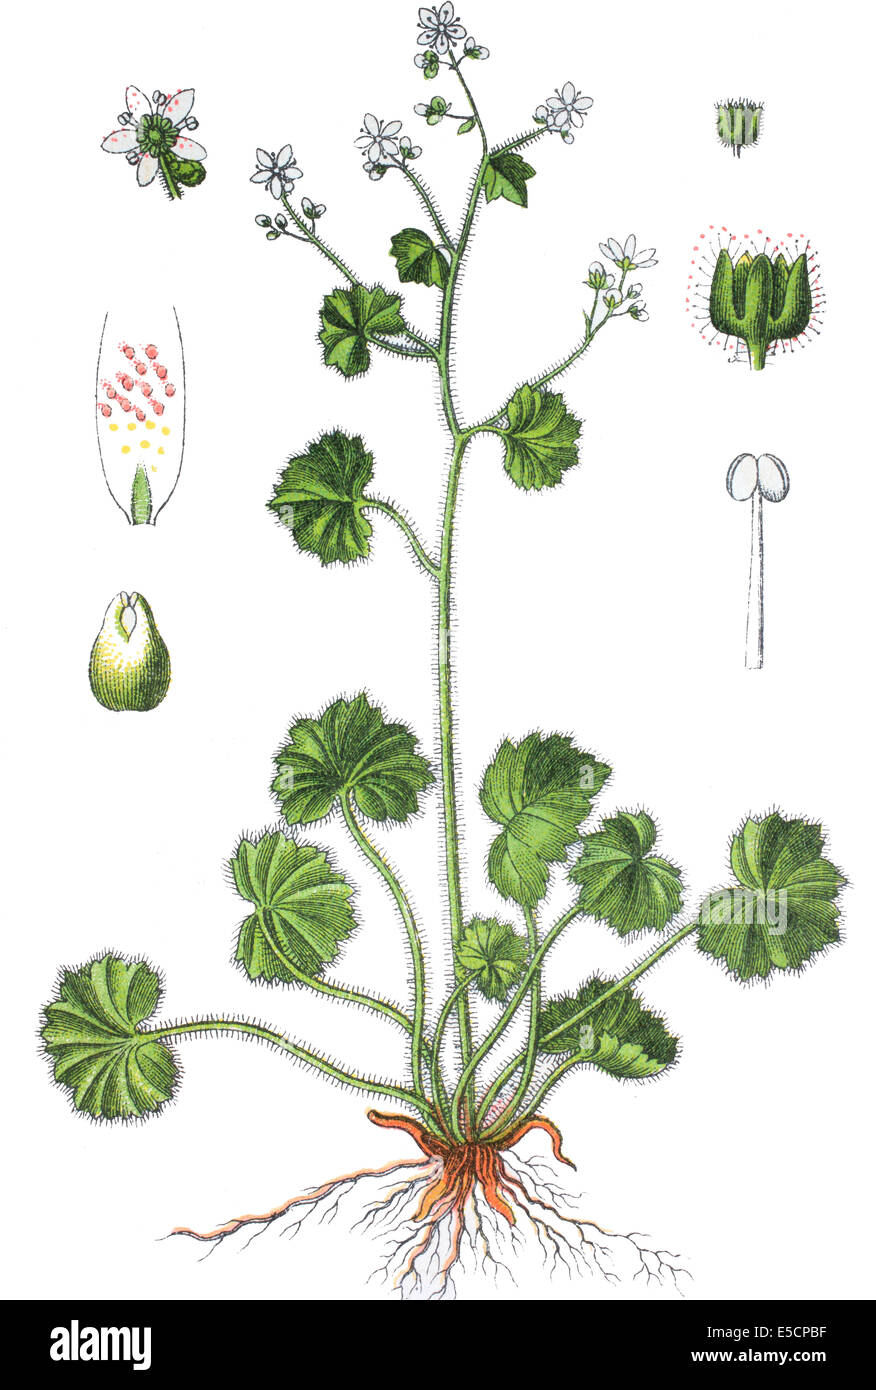 Saxifraga rotundifolia, common name round-leaved saxifrage Stock Photo